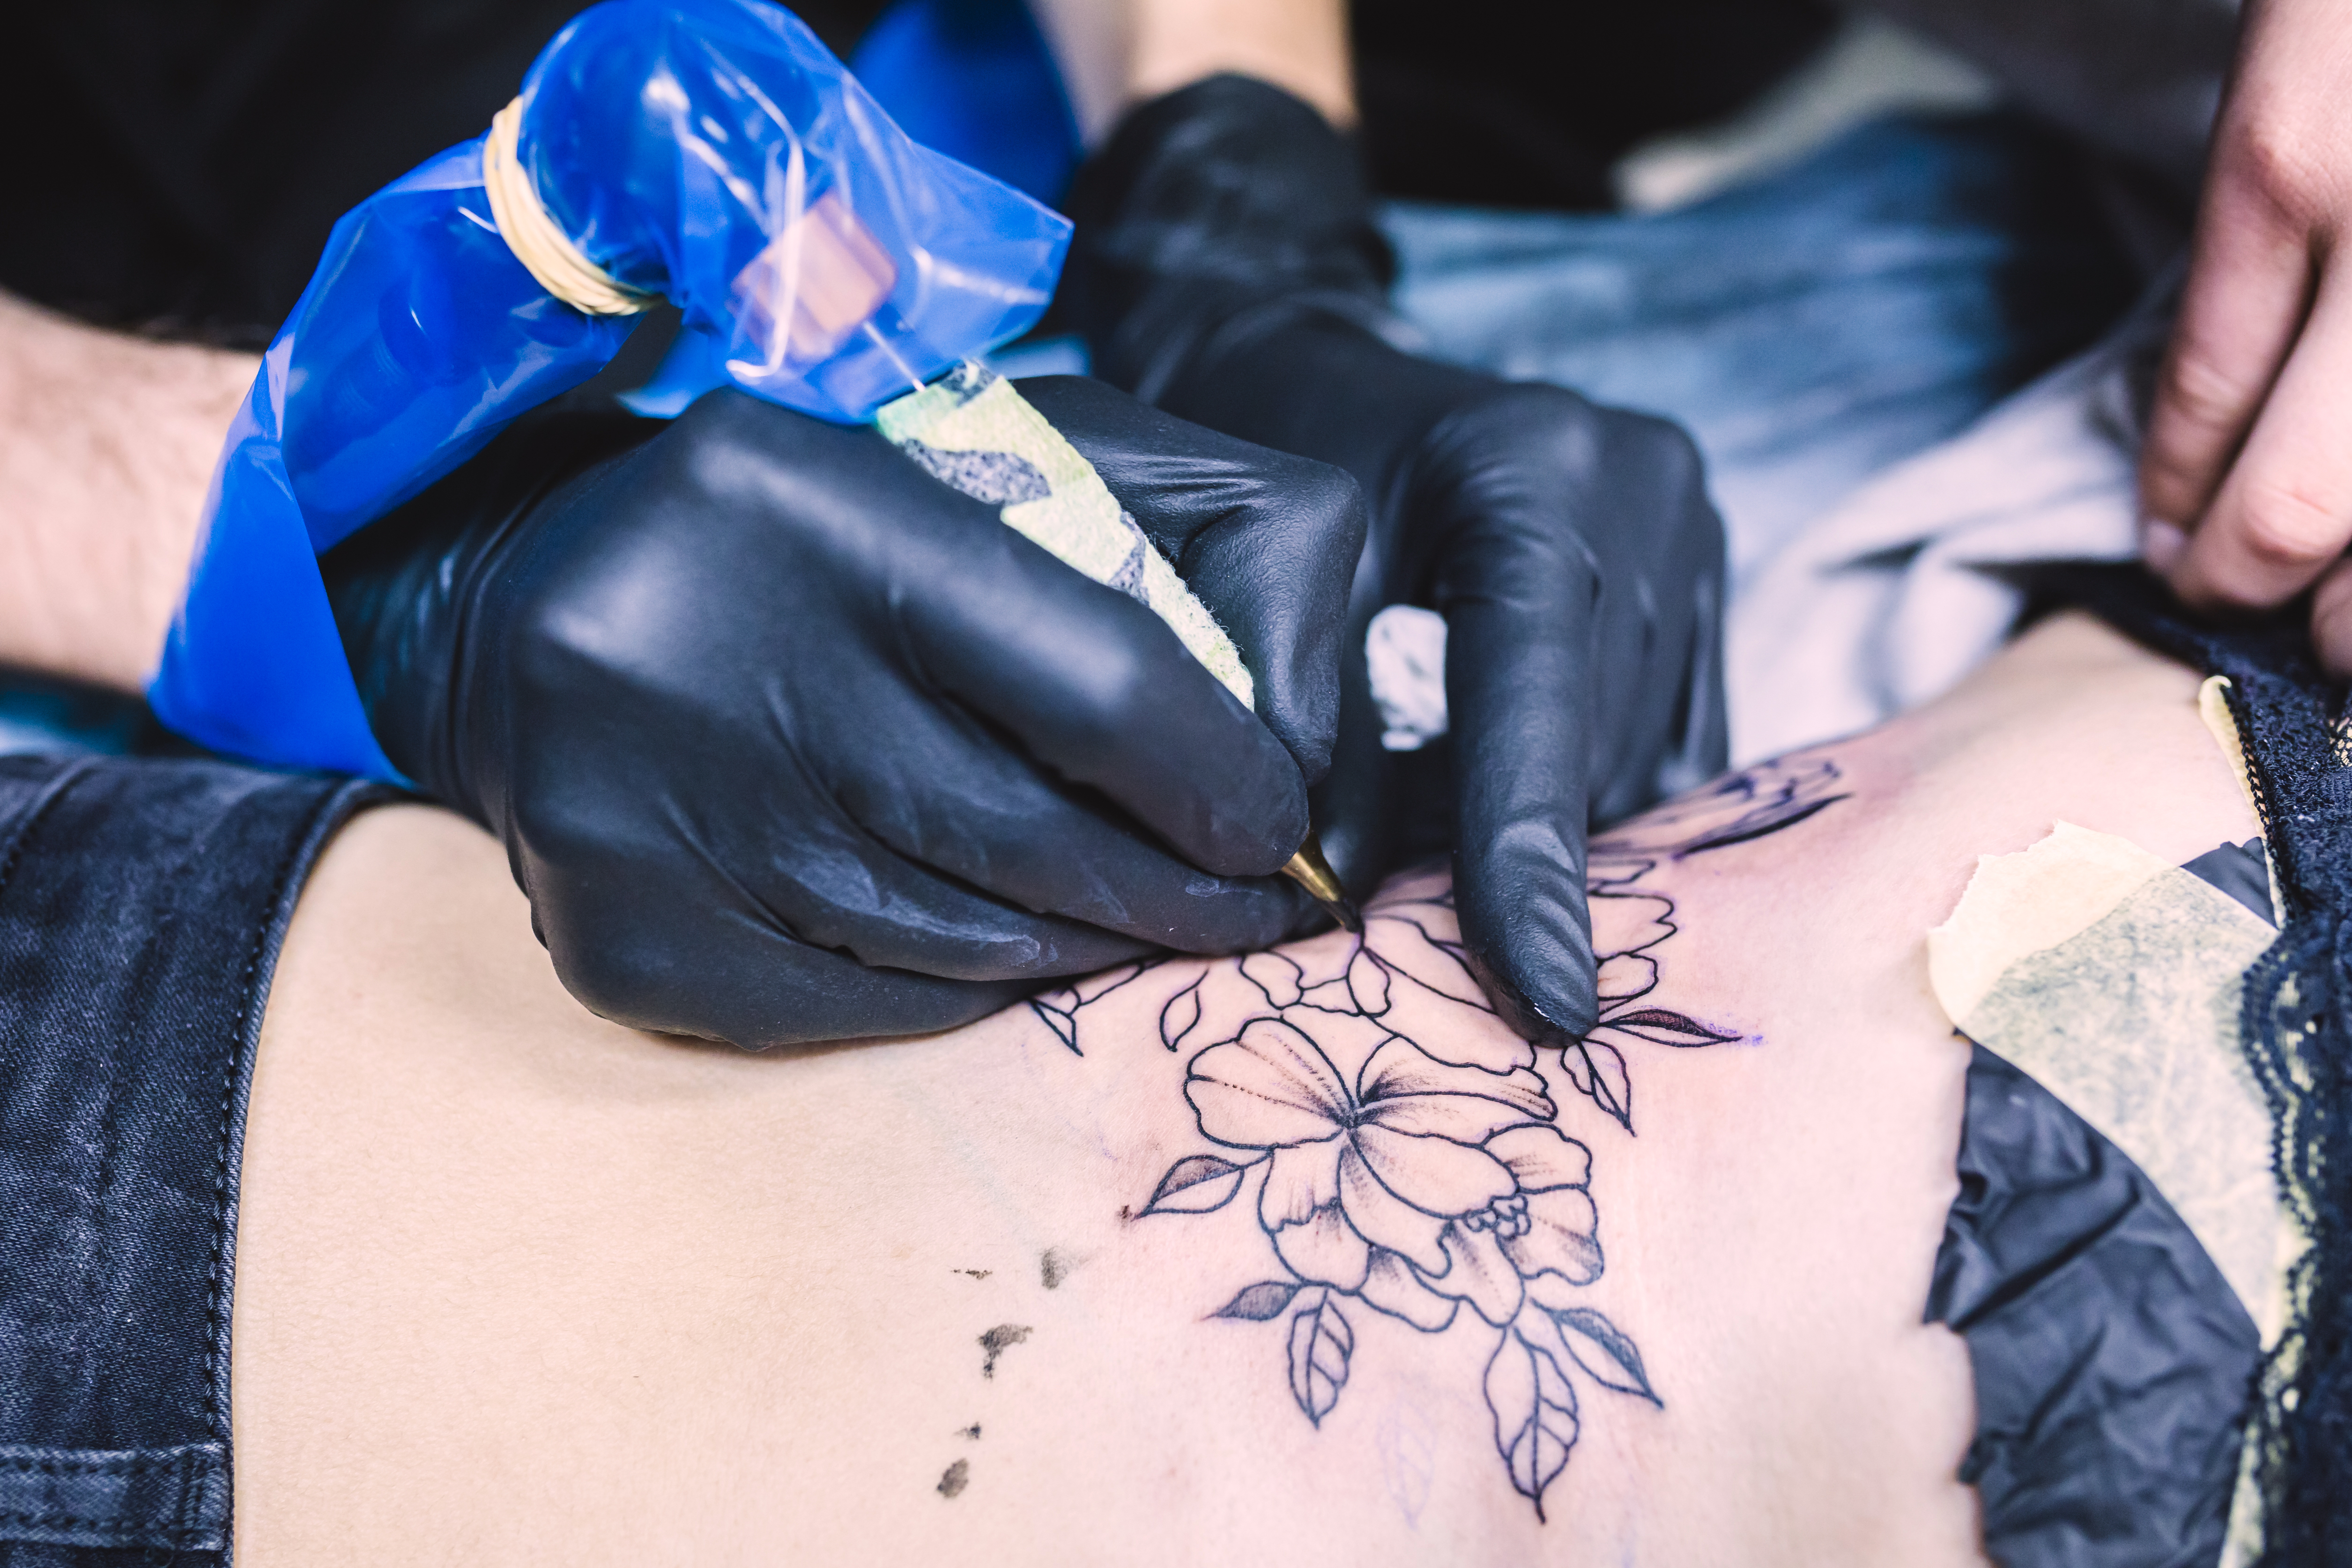 Tatuajes: cómo afectan los pigmentos al sistema inmunitario y cuáles son las consecuencia para la salud - Infobae